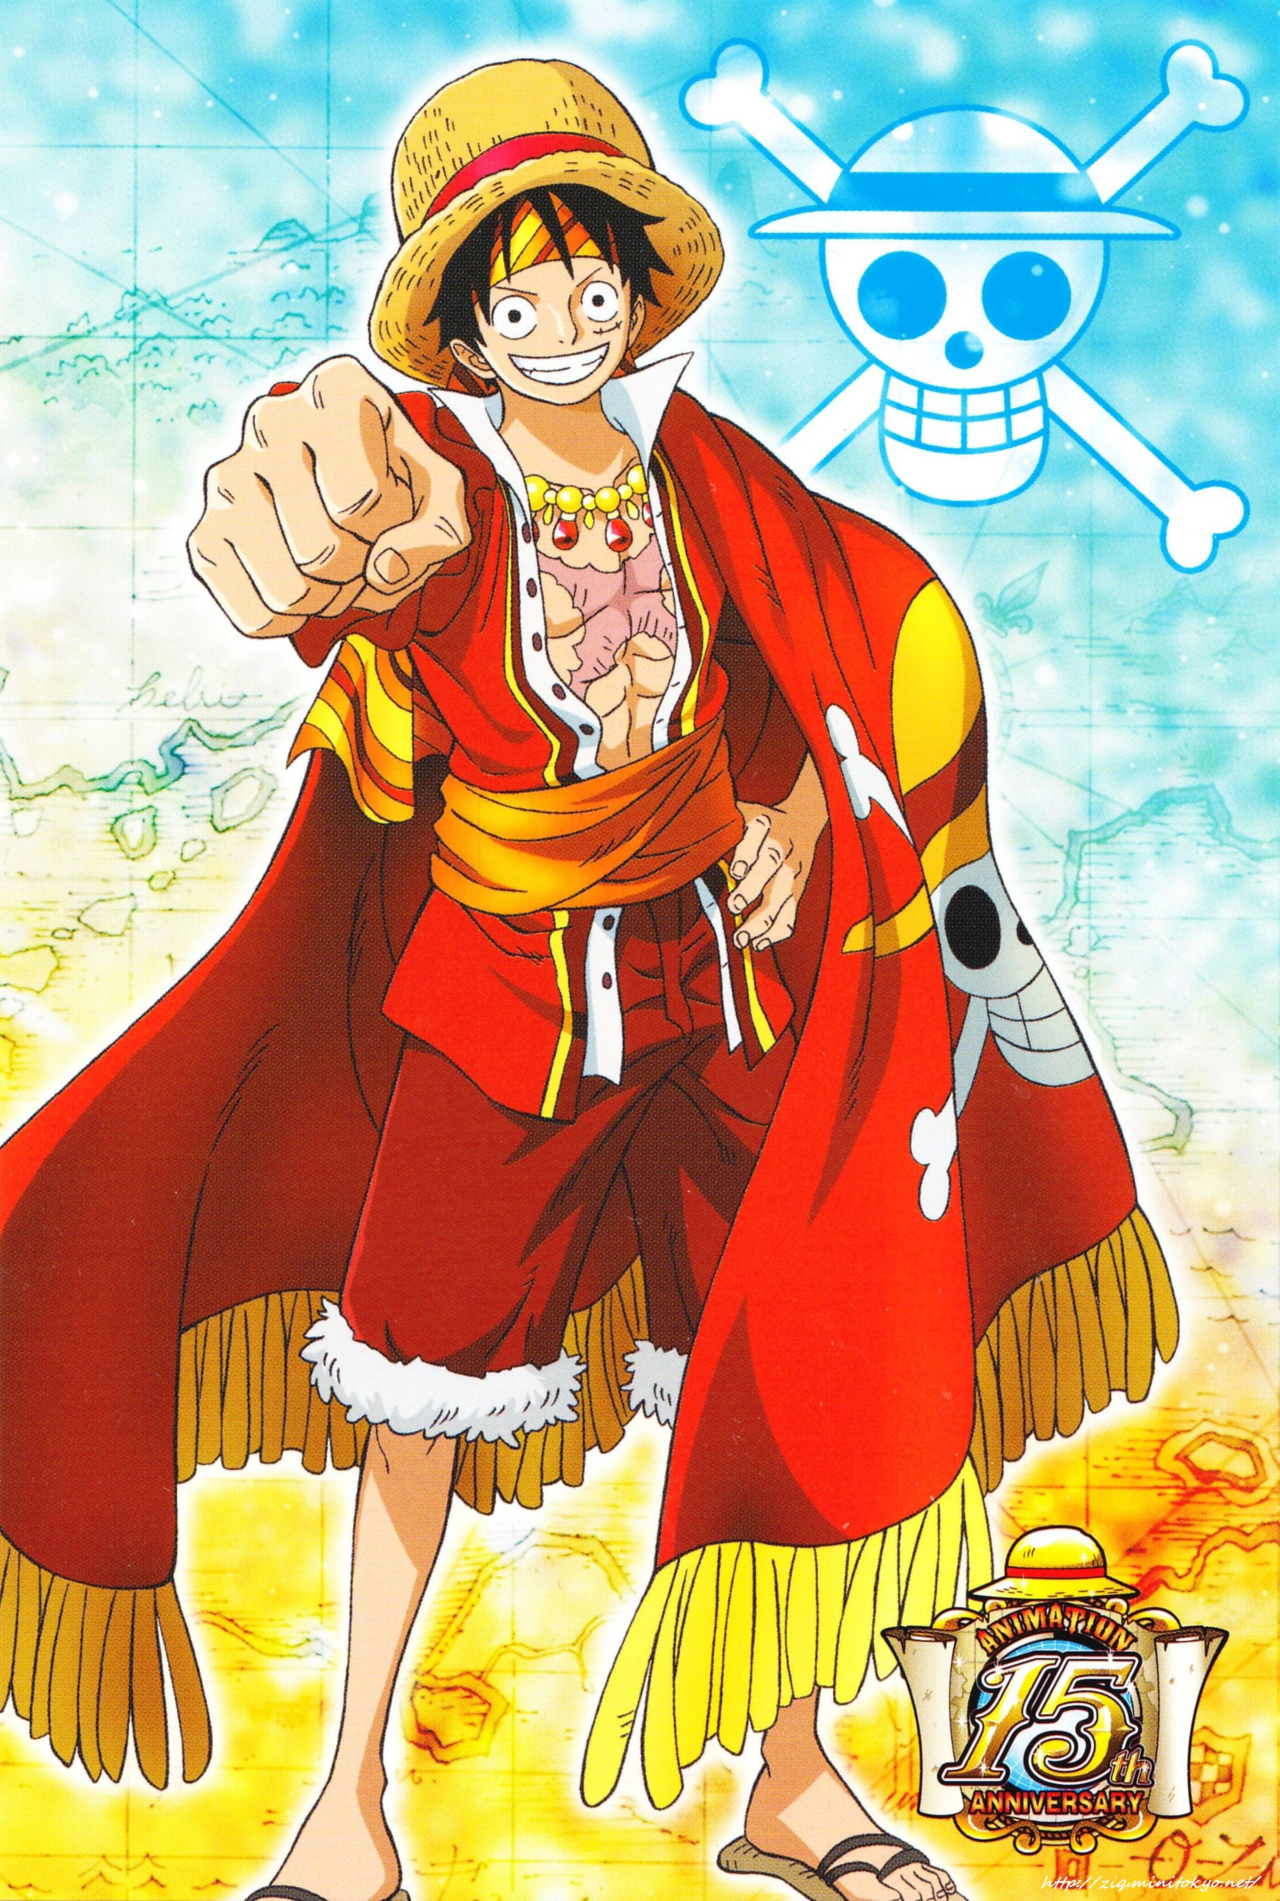 Luffy: Hãy xem hình ảnh về Luffy - nhân vật chính trong bộ anime/manga One Piece, người luôn có tinh thần lạc quan và không bao giờ từ bỏ. Hình ảnh Luffy đầy năng lượng và sáng tạo sẽ khiến bạn cảm thấy tươi mới và đầy sức sống!